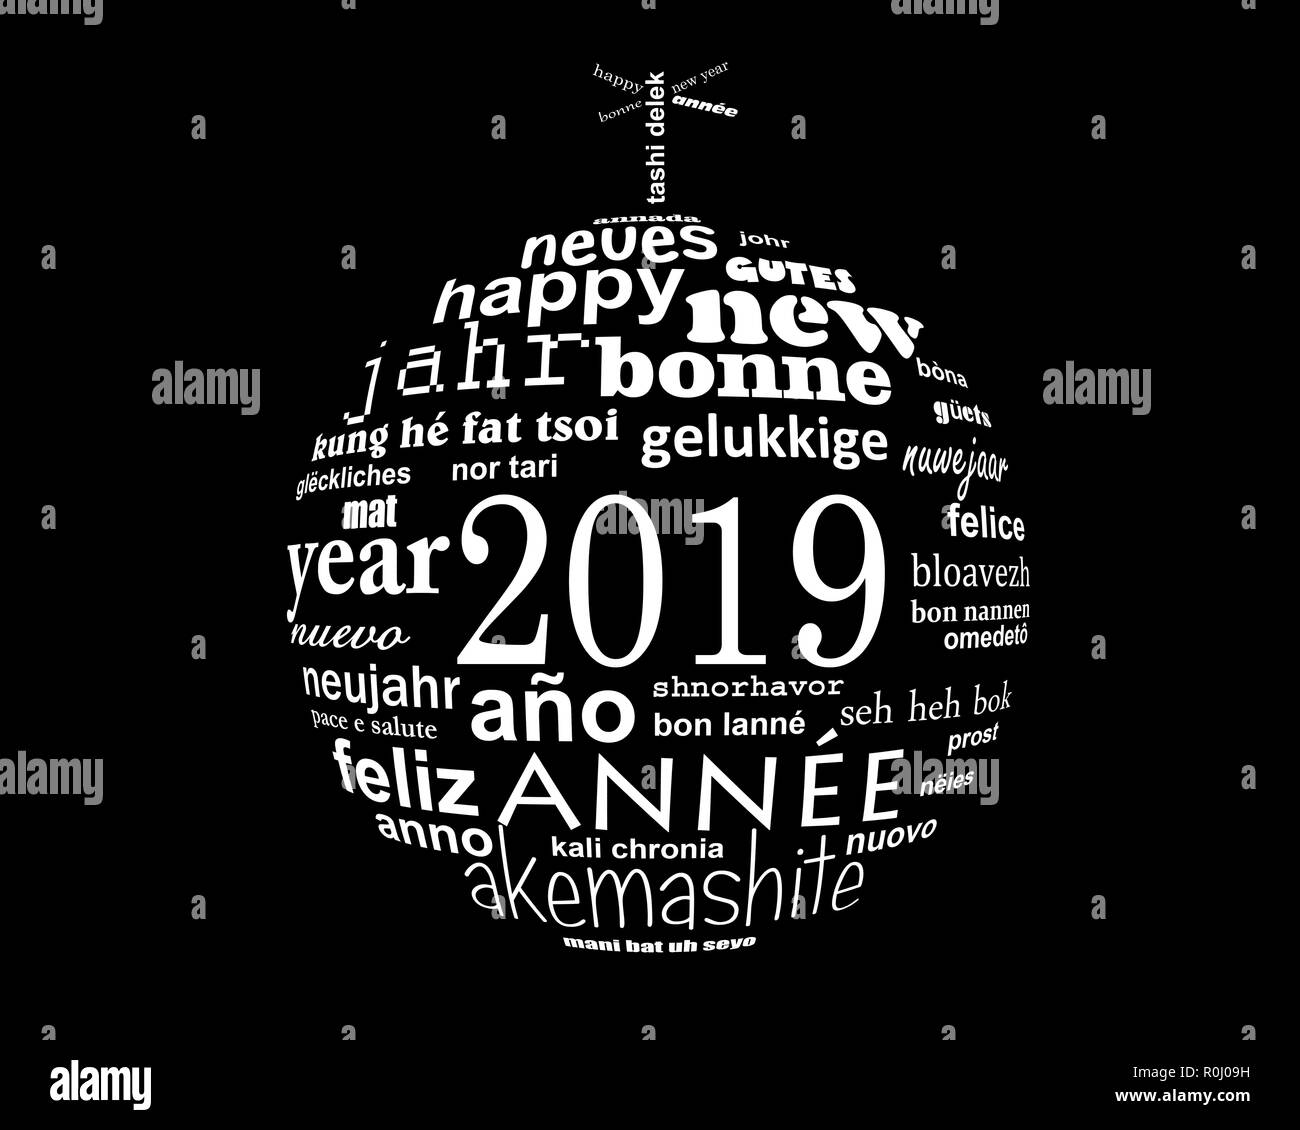 Nouvel an 2019 nuage de mots de texte multilingue dans la forme d'une boule de noël Banque D'Images